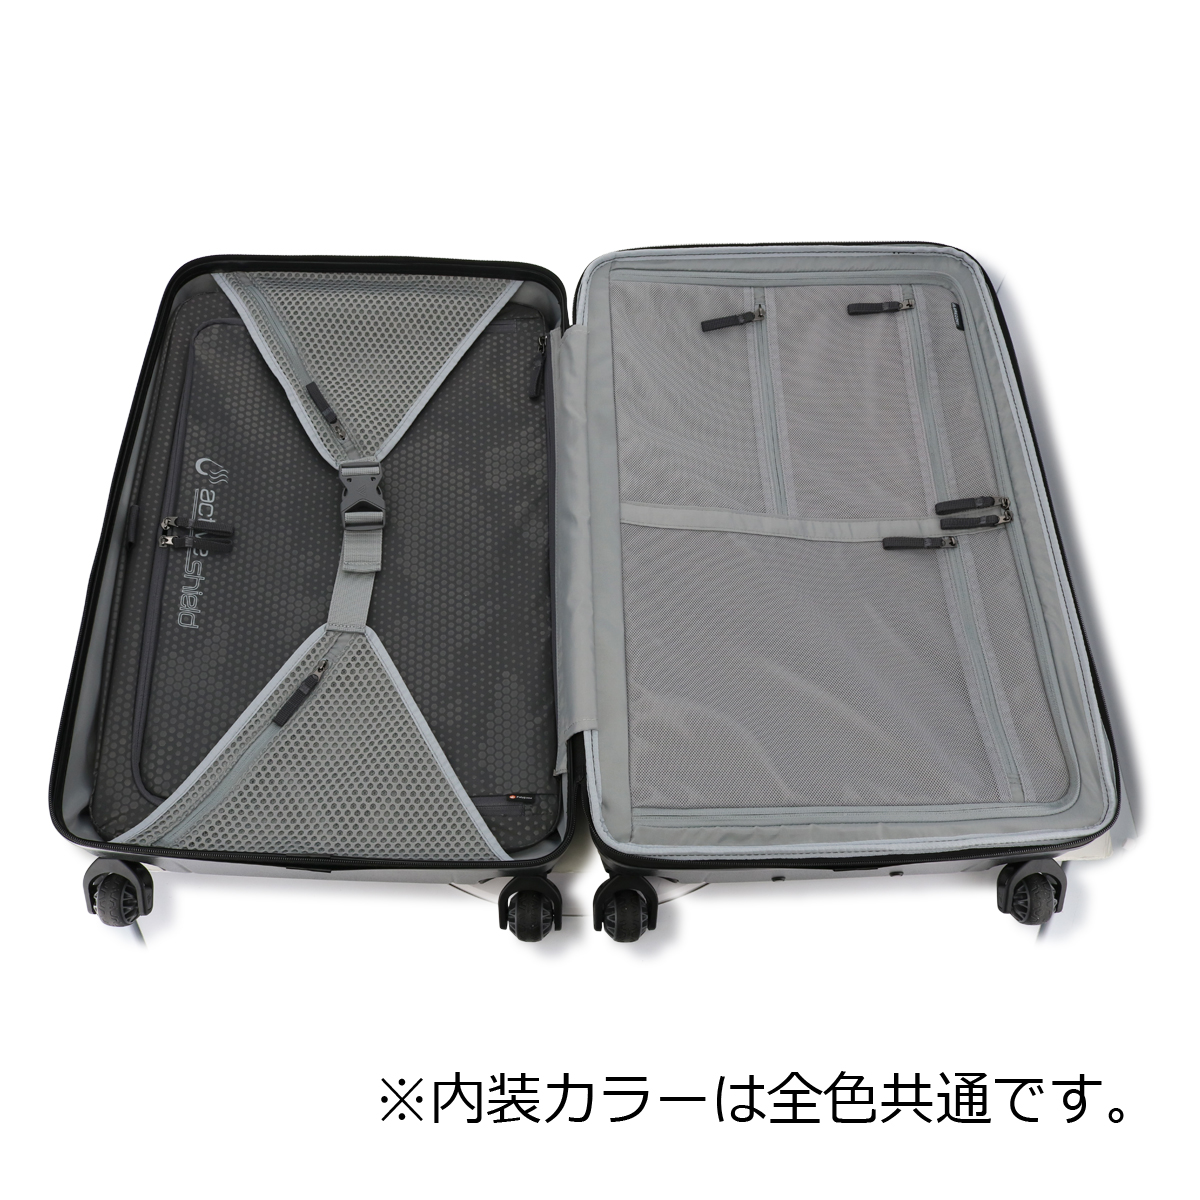 グレゴリー スーツケース 88L 71.1cm 5.24kg 抗菌 QUADRO PRO HARDCASE 28 GREGORY ハードキャリー  TSAロック 4輪 大容量 出張 海外旅行 国内旅行